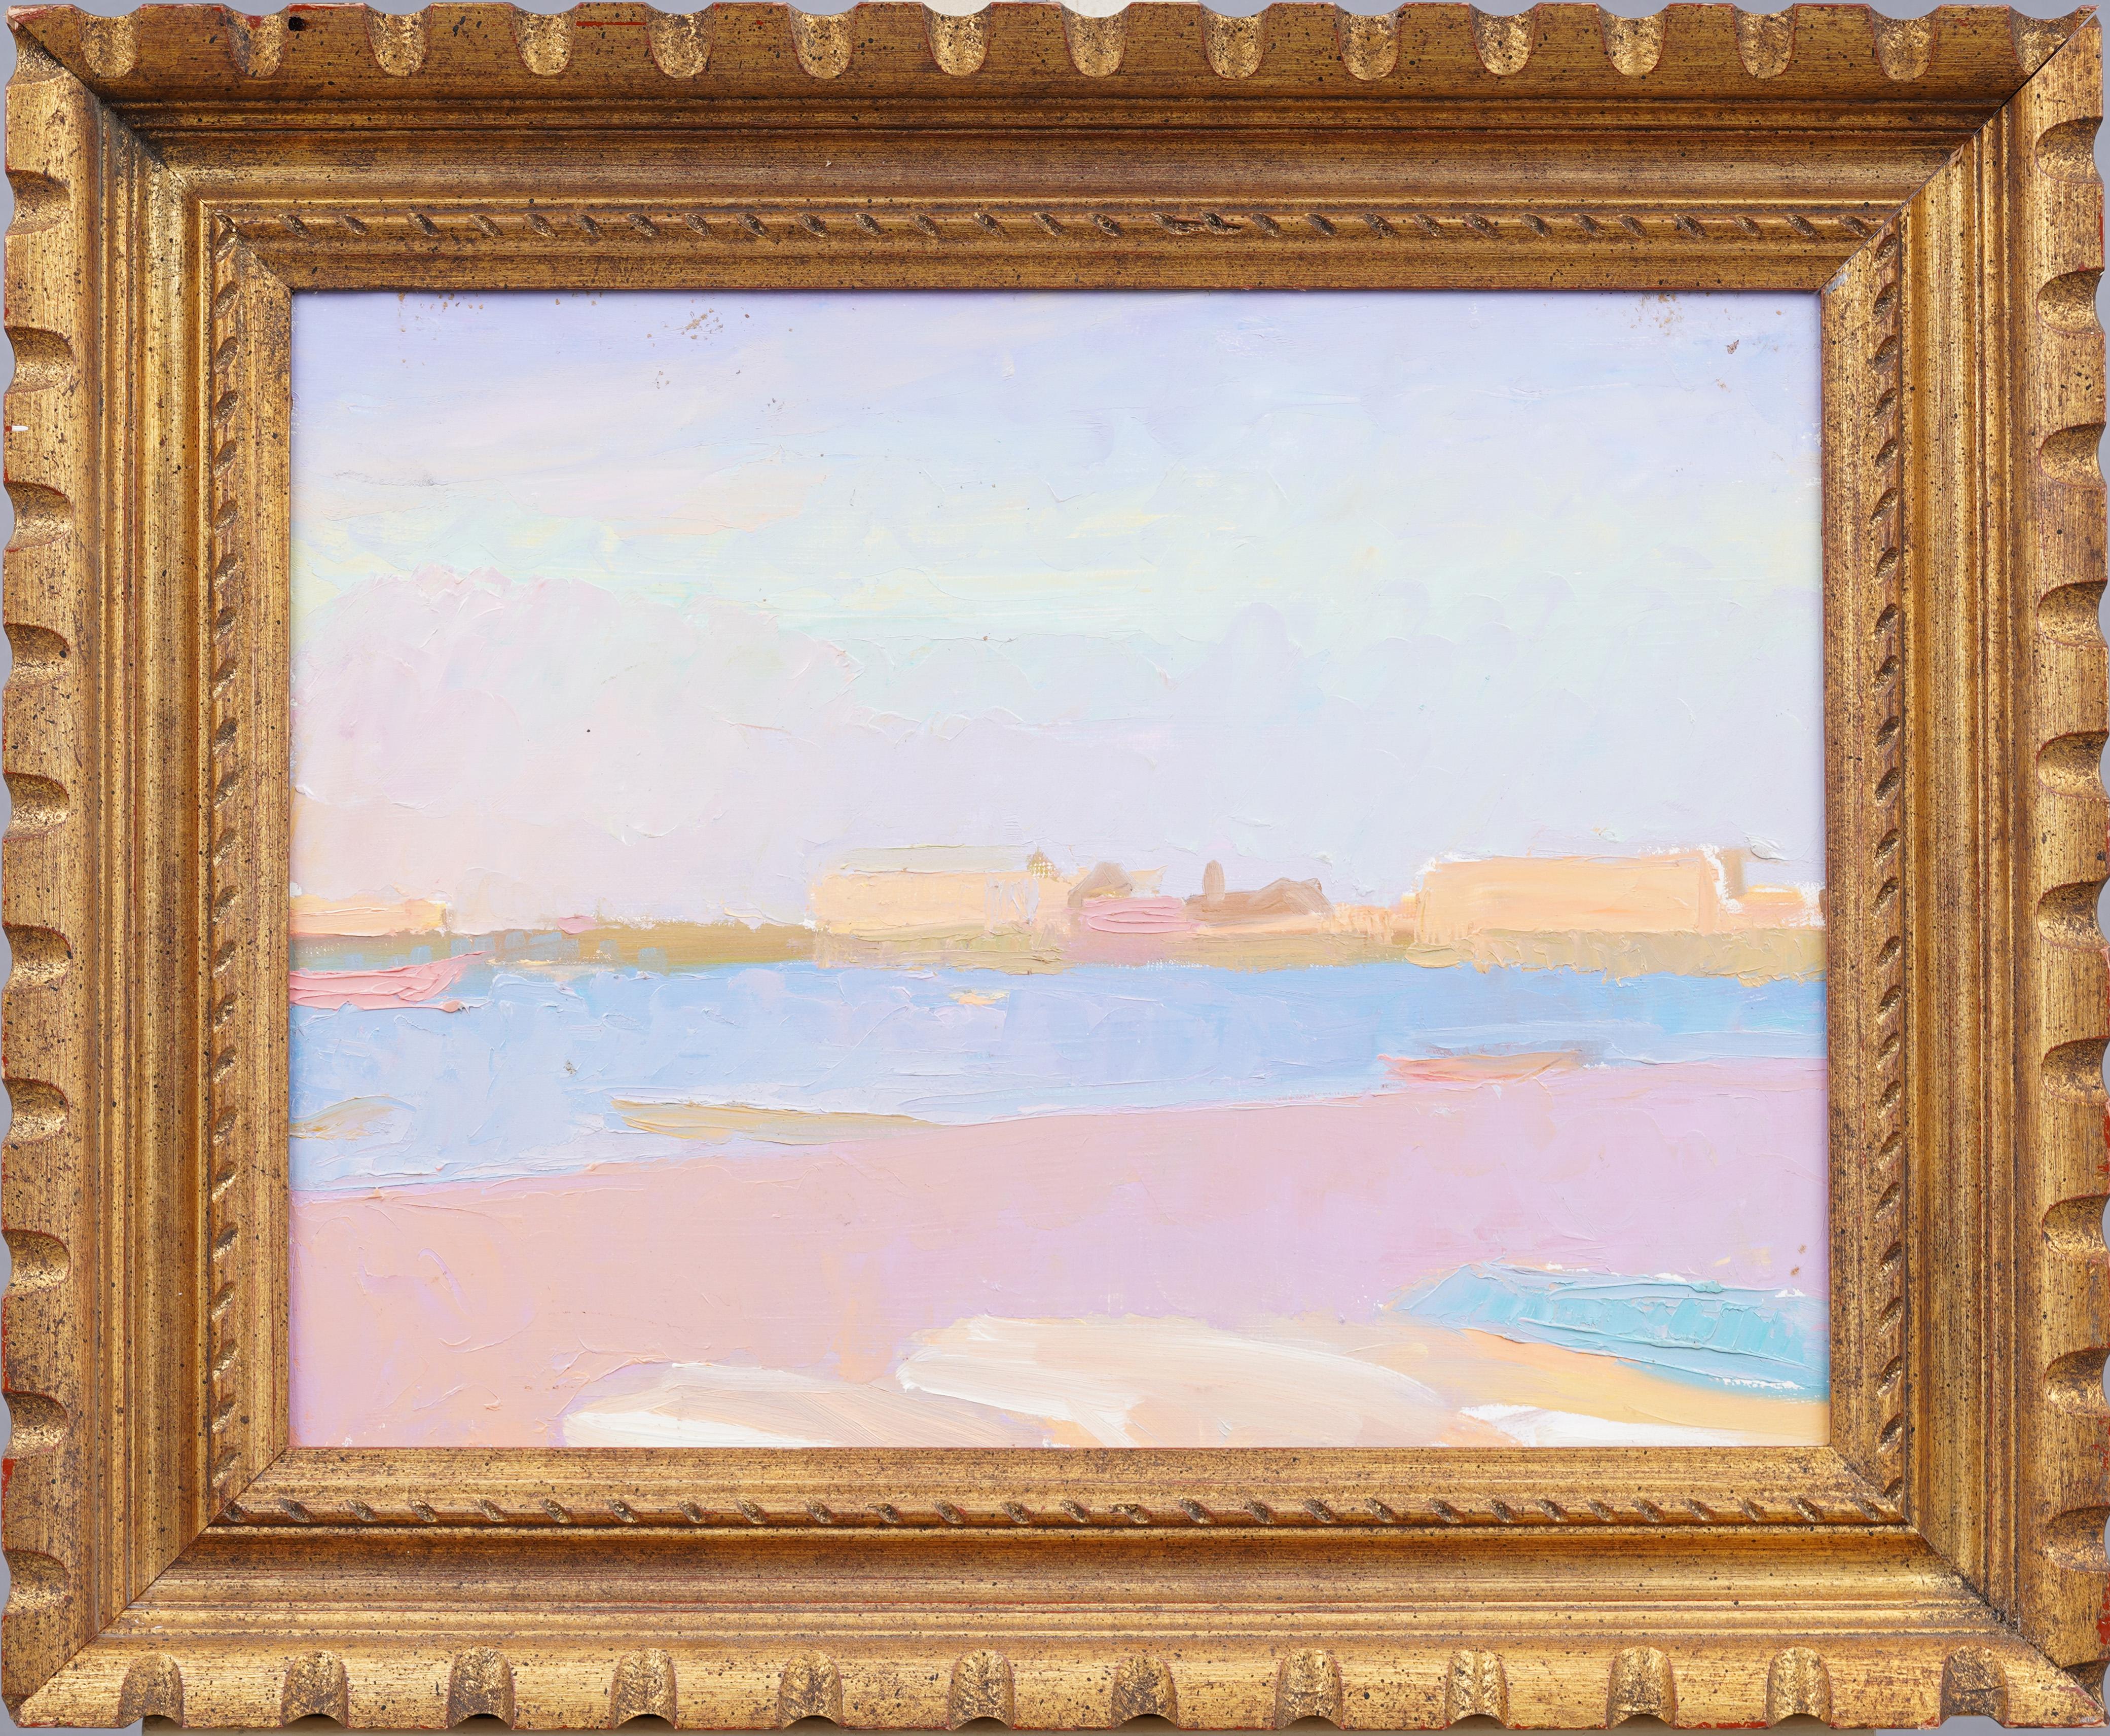 Antikes amerikanisches modernistisches Ölgemälde mit Sommer-, Strand- und Meeresszene, gerahmt, Hamptons – Painting von Unknown